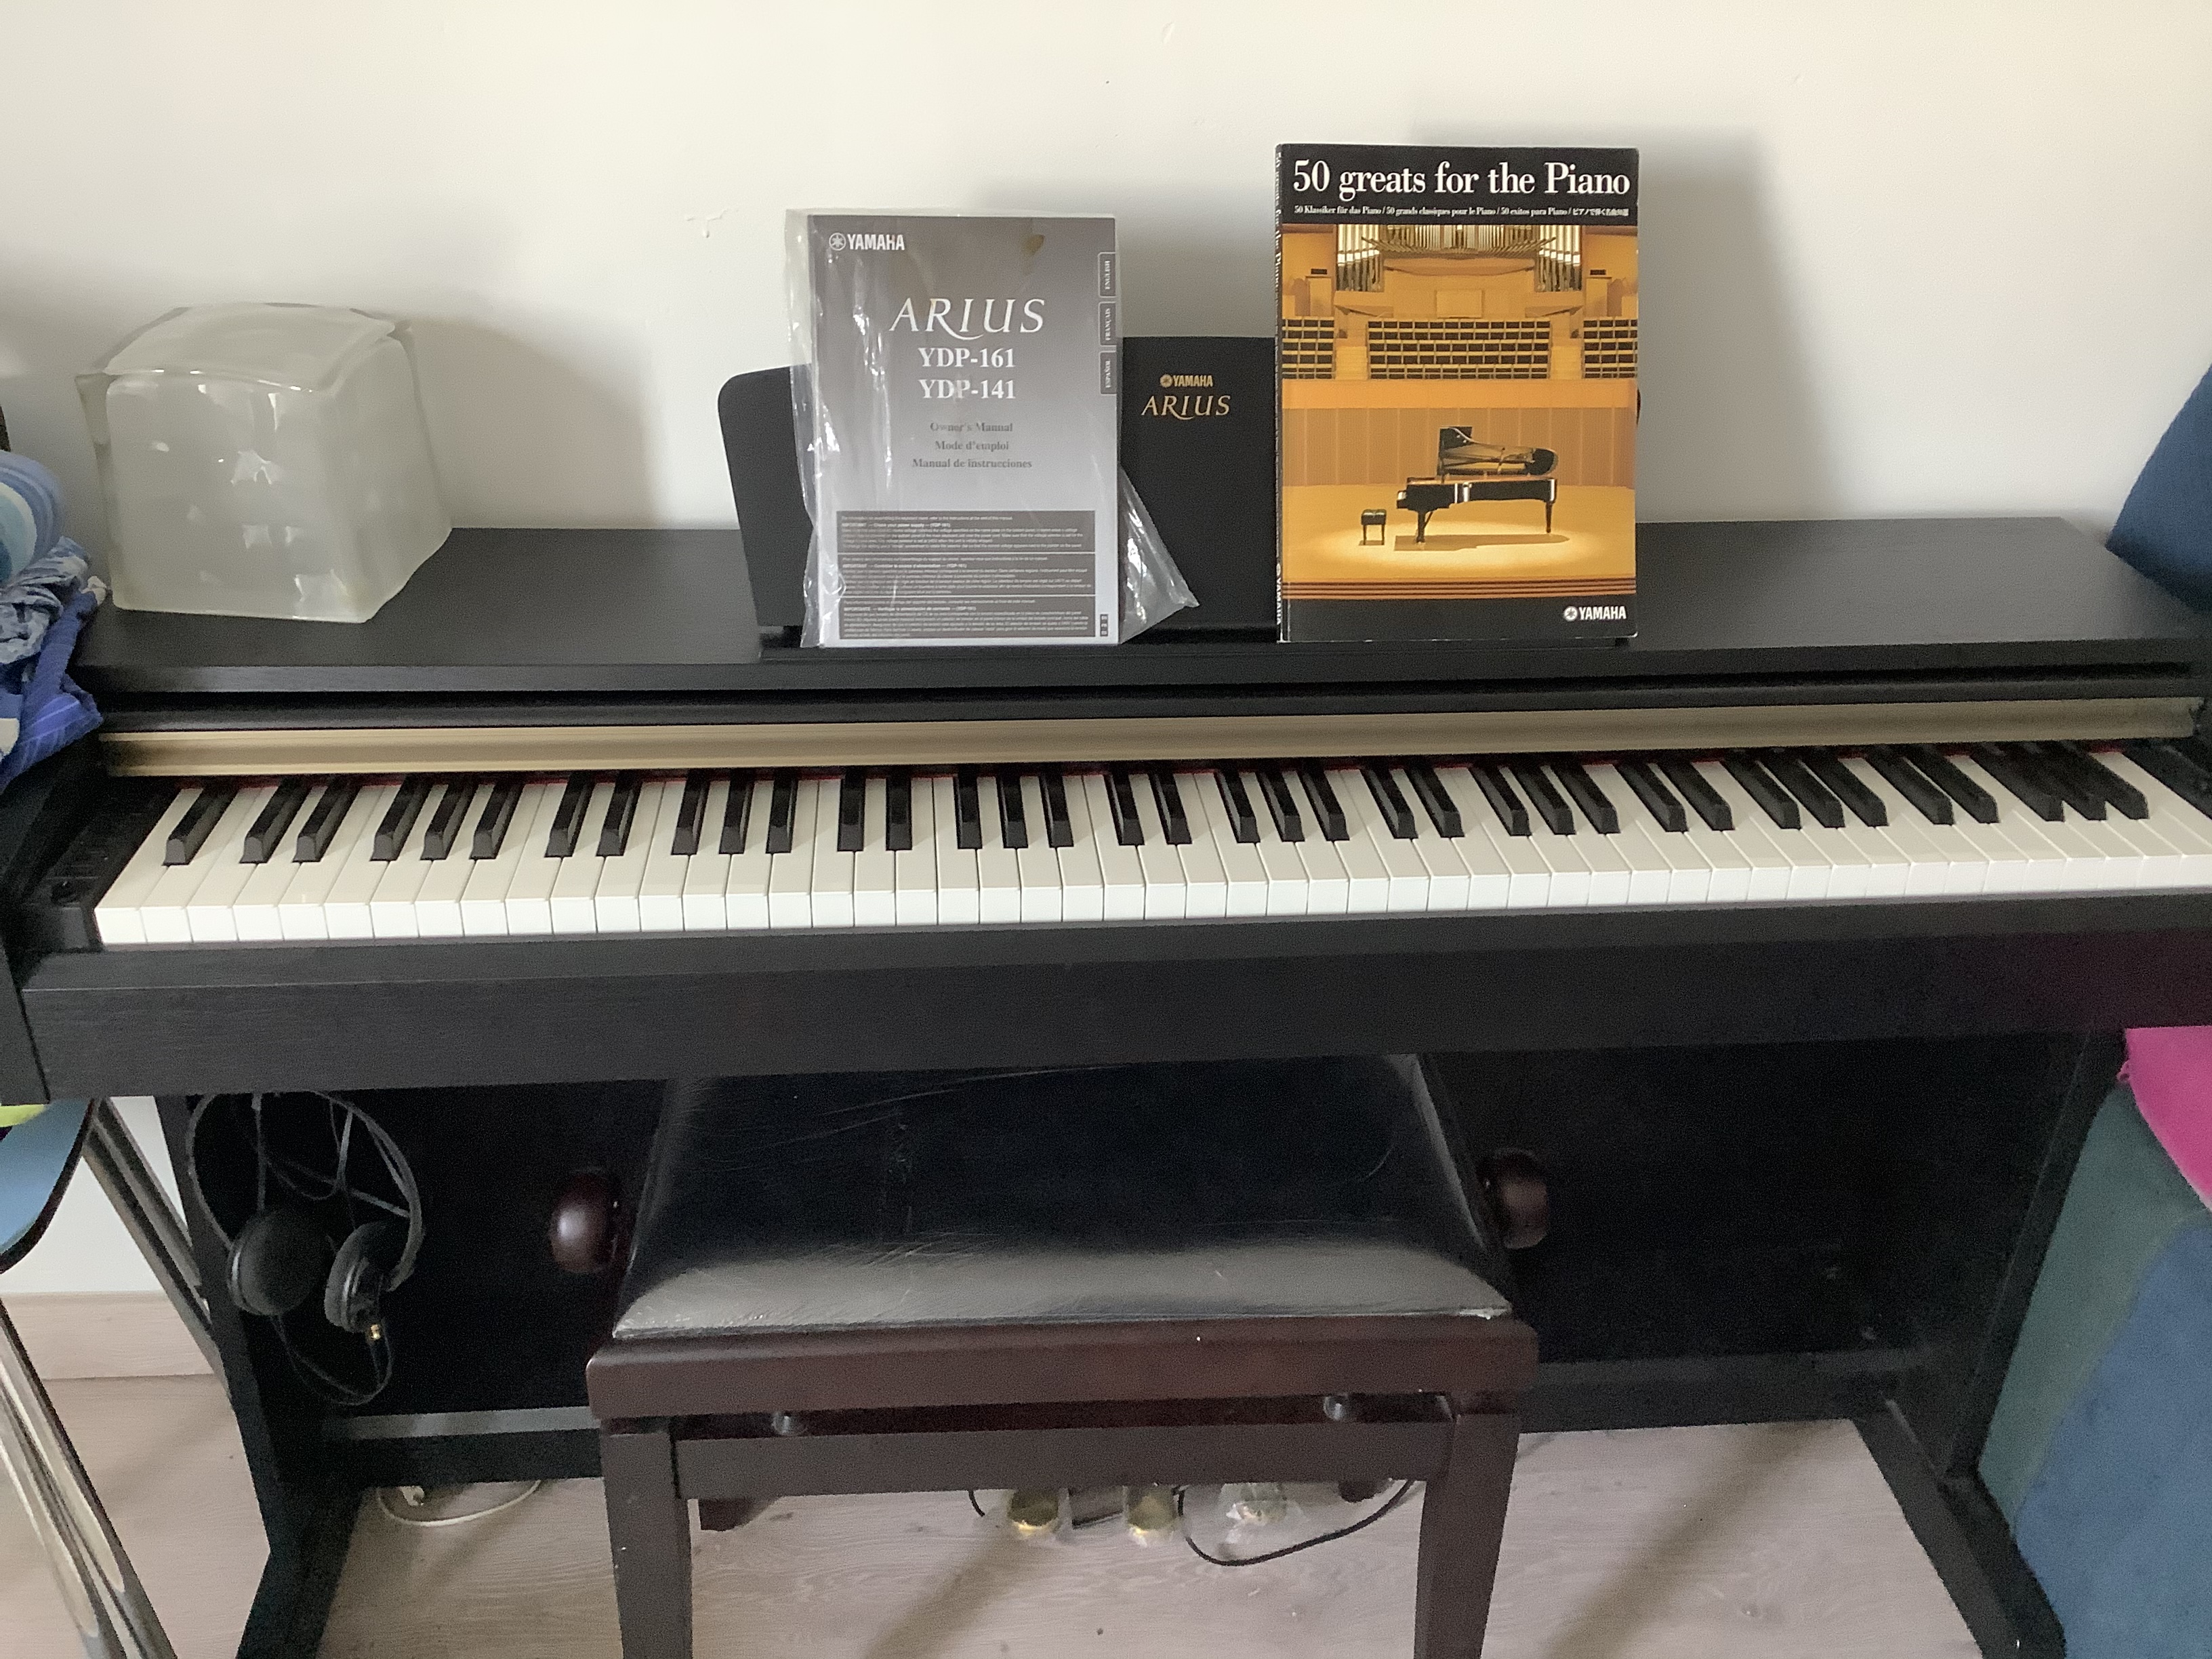 購入前コメント必須】YAMAHA 電子ピアノARIUS YDP-140 - 鍵盤楽器、ピアノ